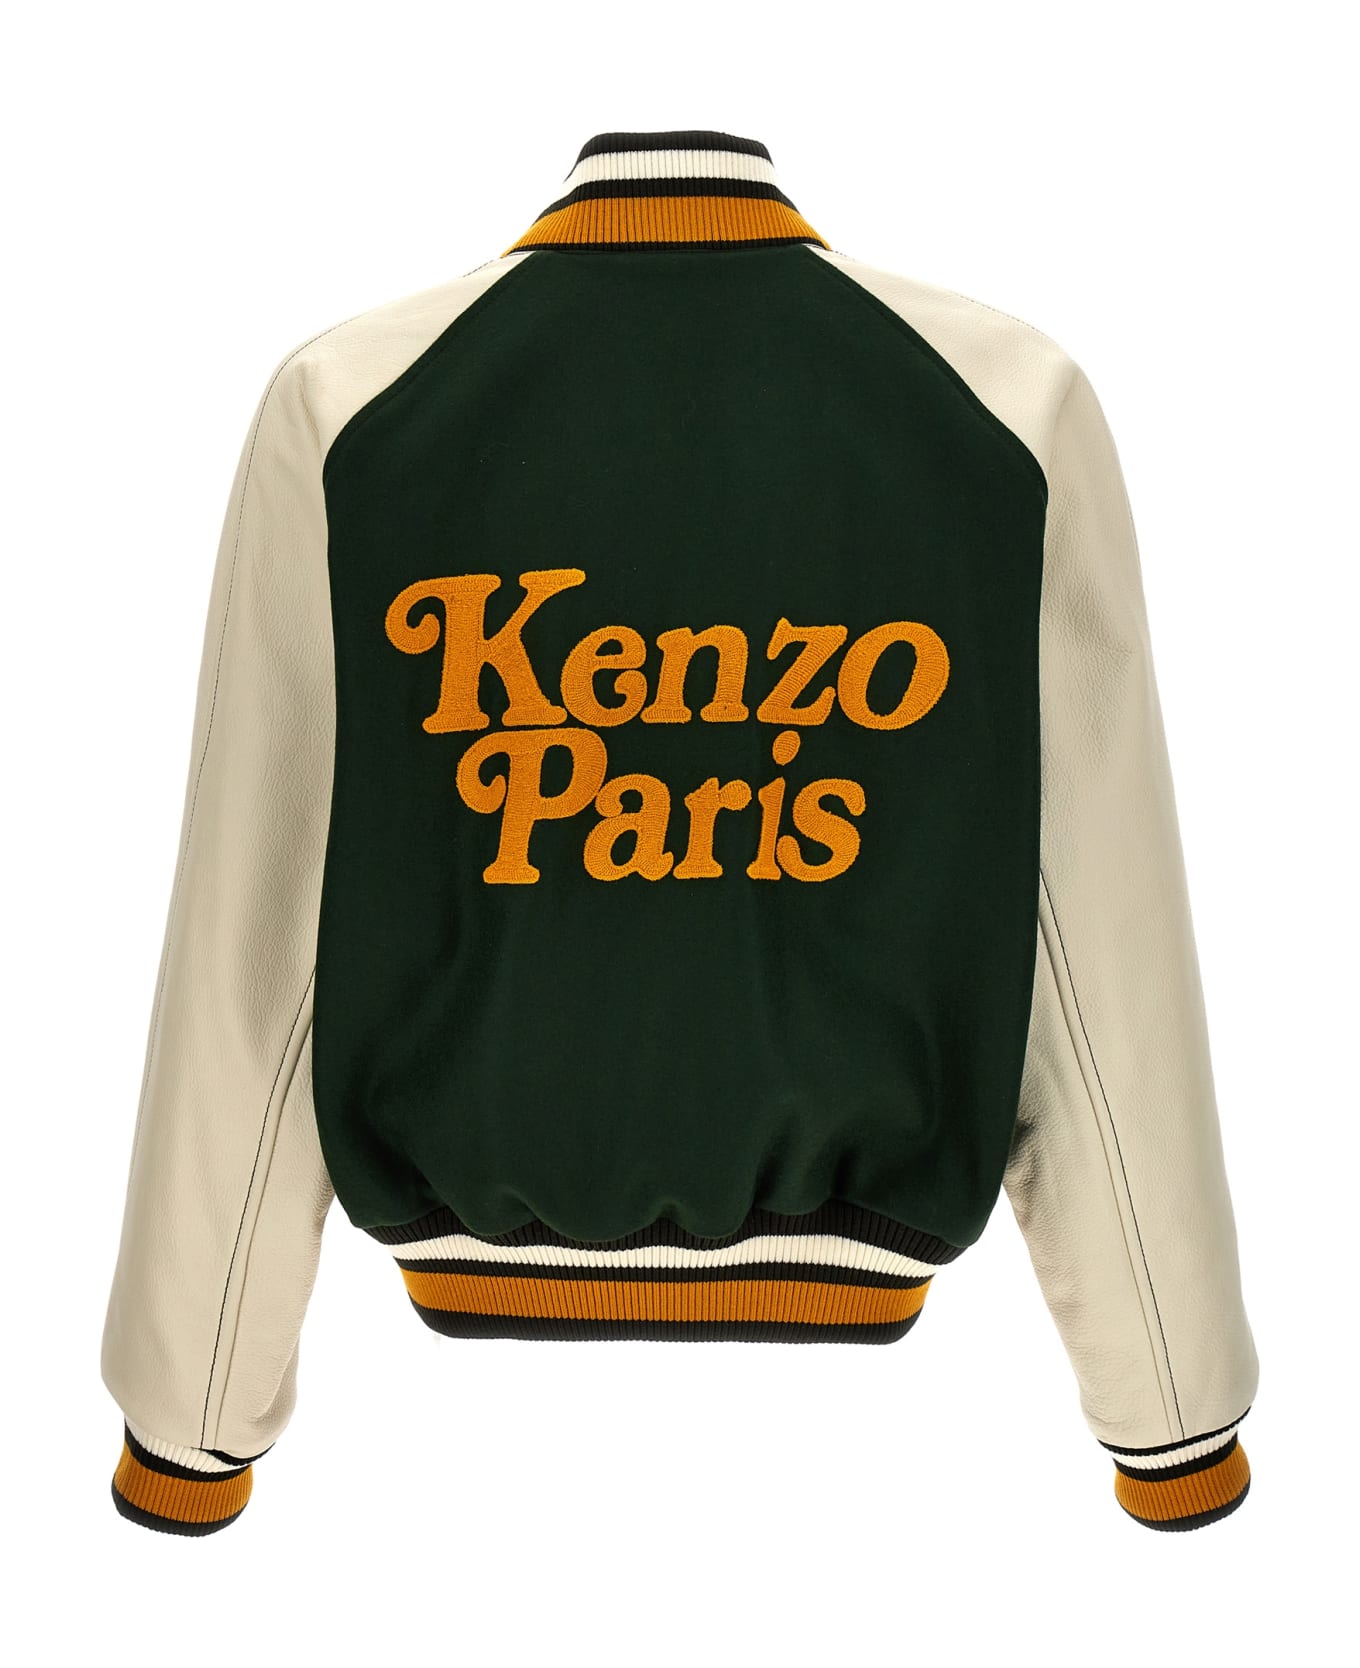 Kenzo By Verdy Varsity Bomber Jacket - Green